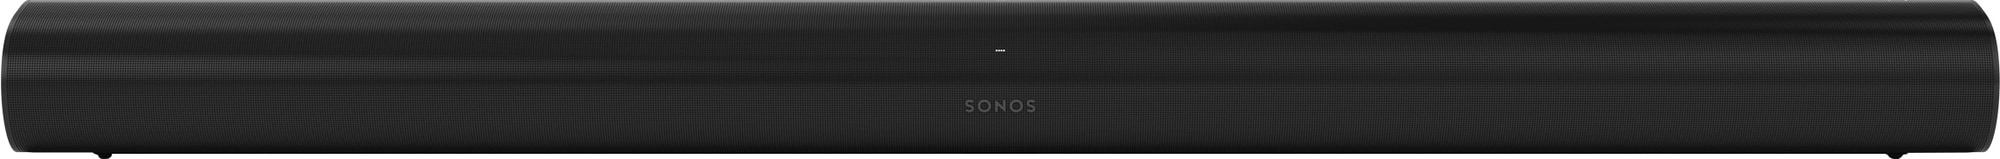 Sonos Arc 5-kanals smart lydplanke (sort) - Elkjøp